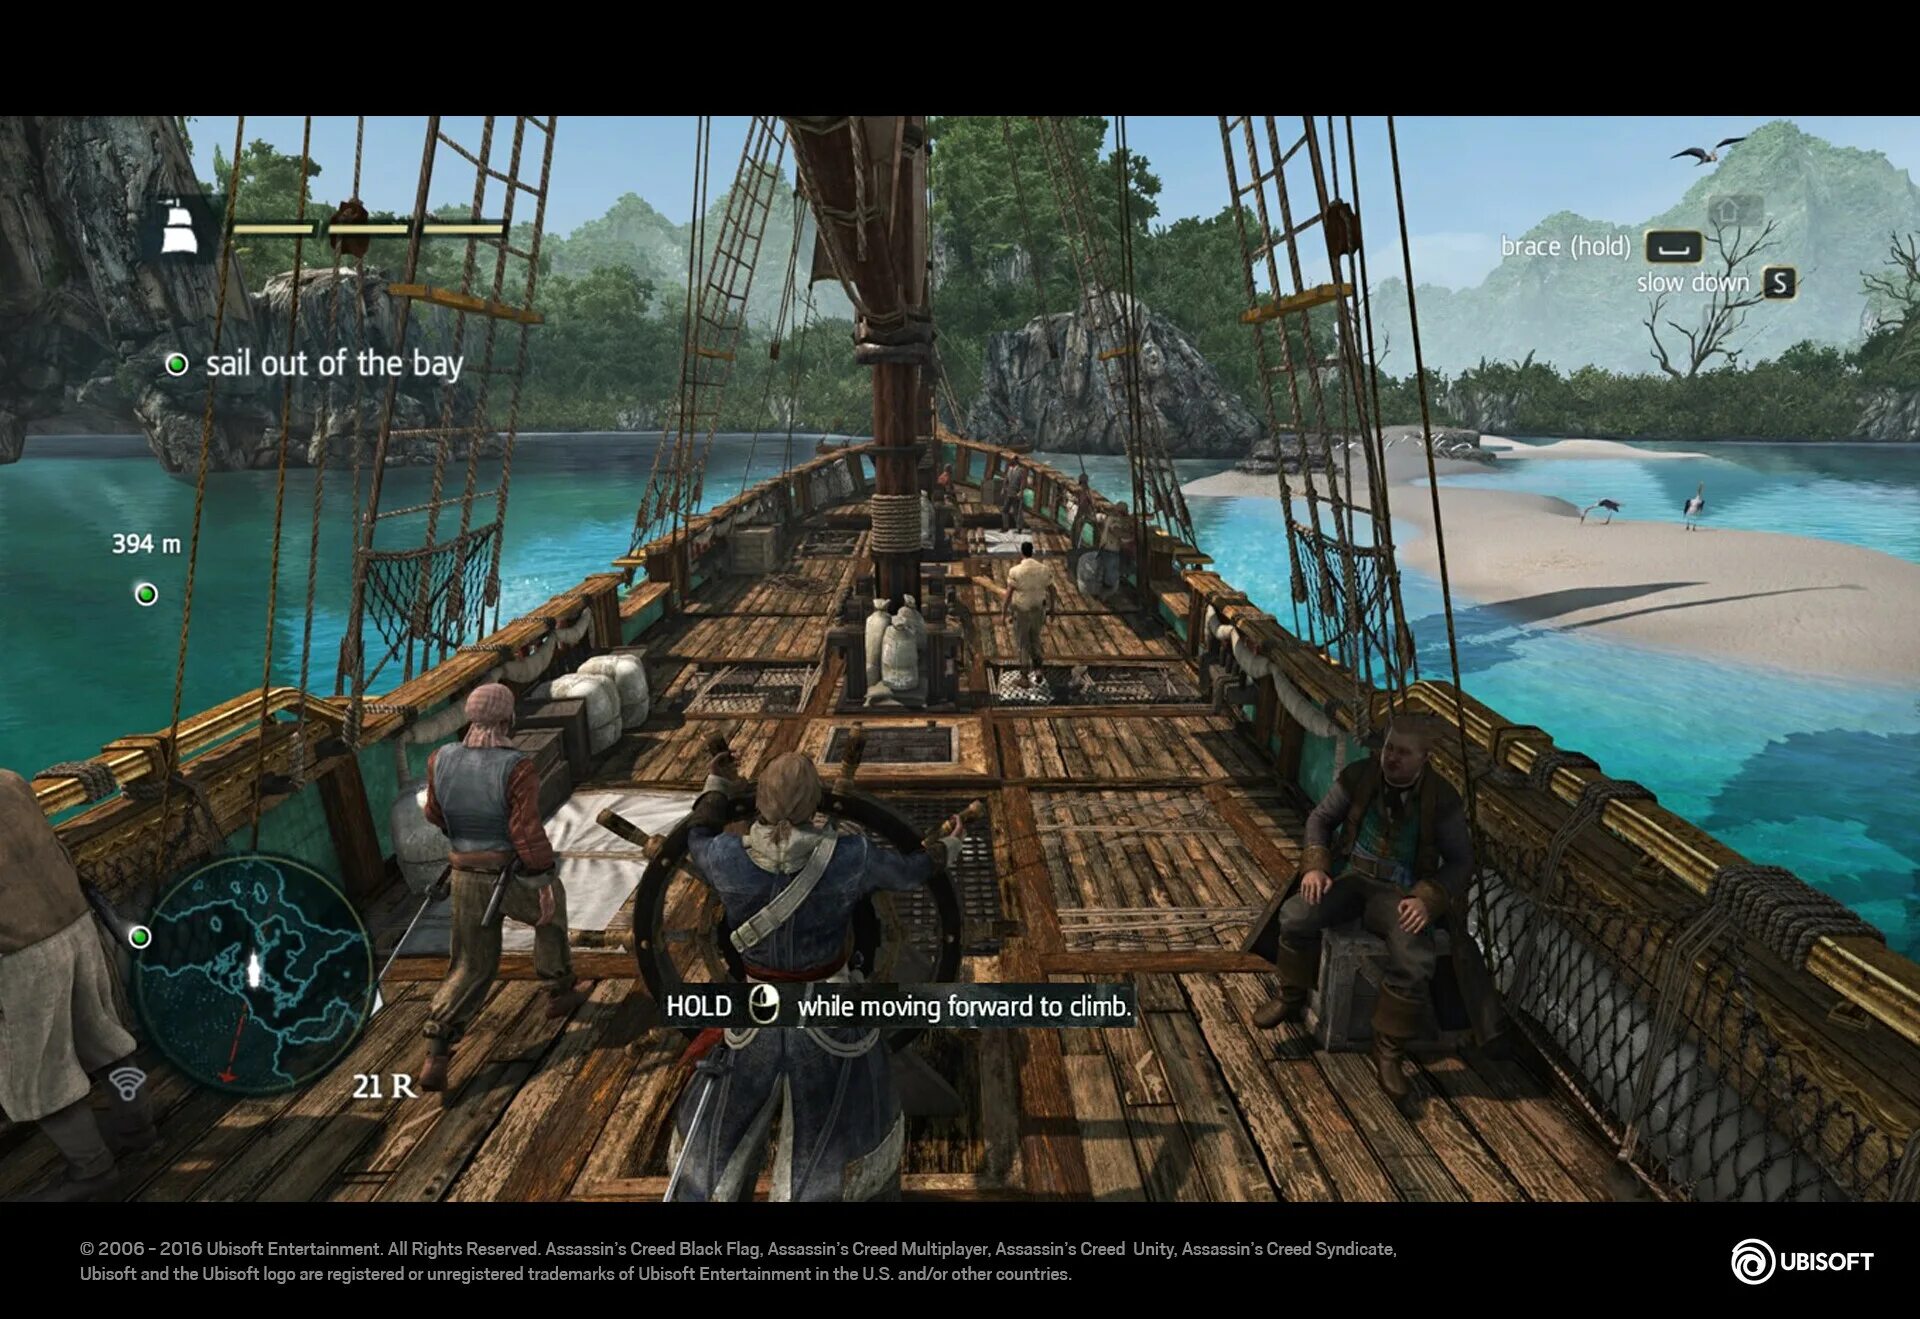 Игры про пиратов с открытым миром. Assassin's Creed 4 Black Flag геймплей. Assassin’s Creed IV: Black Flag – 2013. Ассасин Крид 4 Блэк флаг геймплей. Assassin’s Creed IV: Black Flag PC.